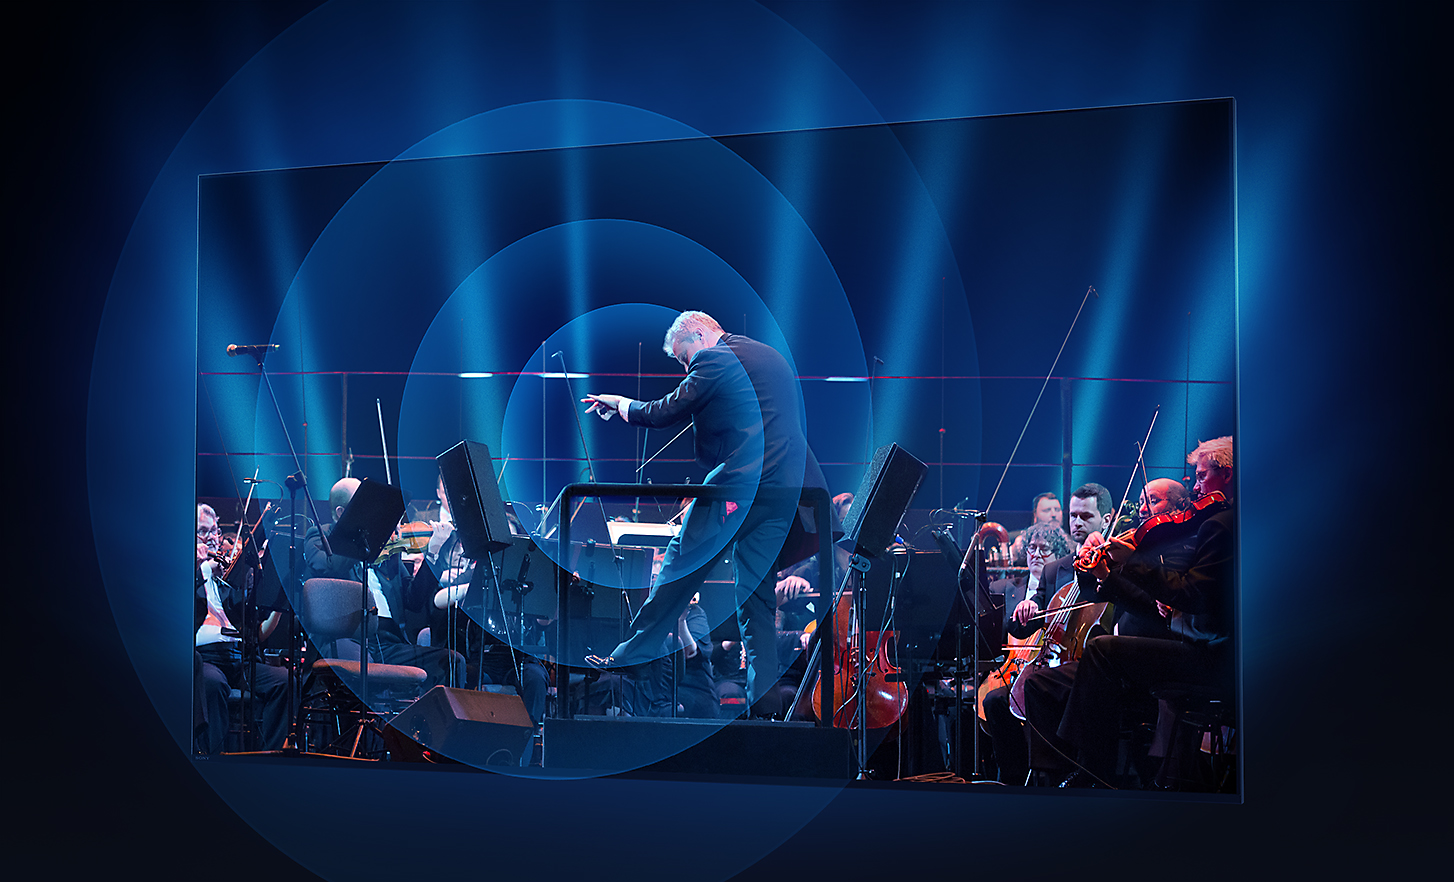 BRAVIA televizoriaus ekrane rodomas dirigentas ir orkestras, o iš ekrano vidurio koncentriniais žiedais sklinda garso bangos